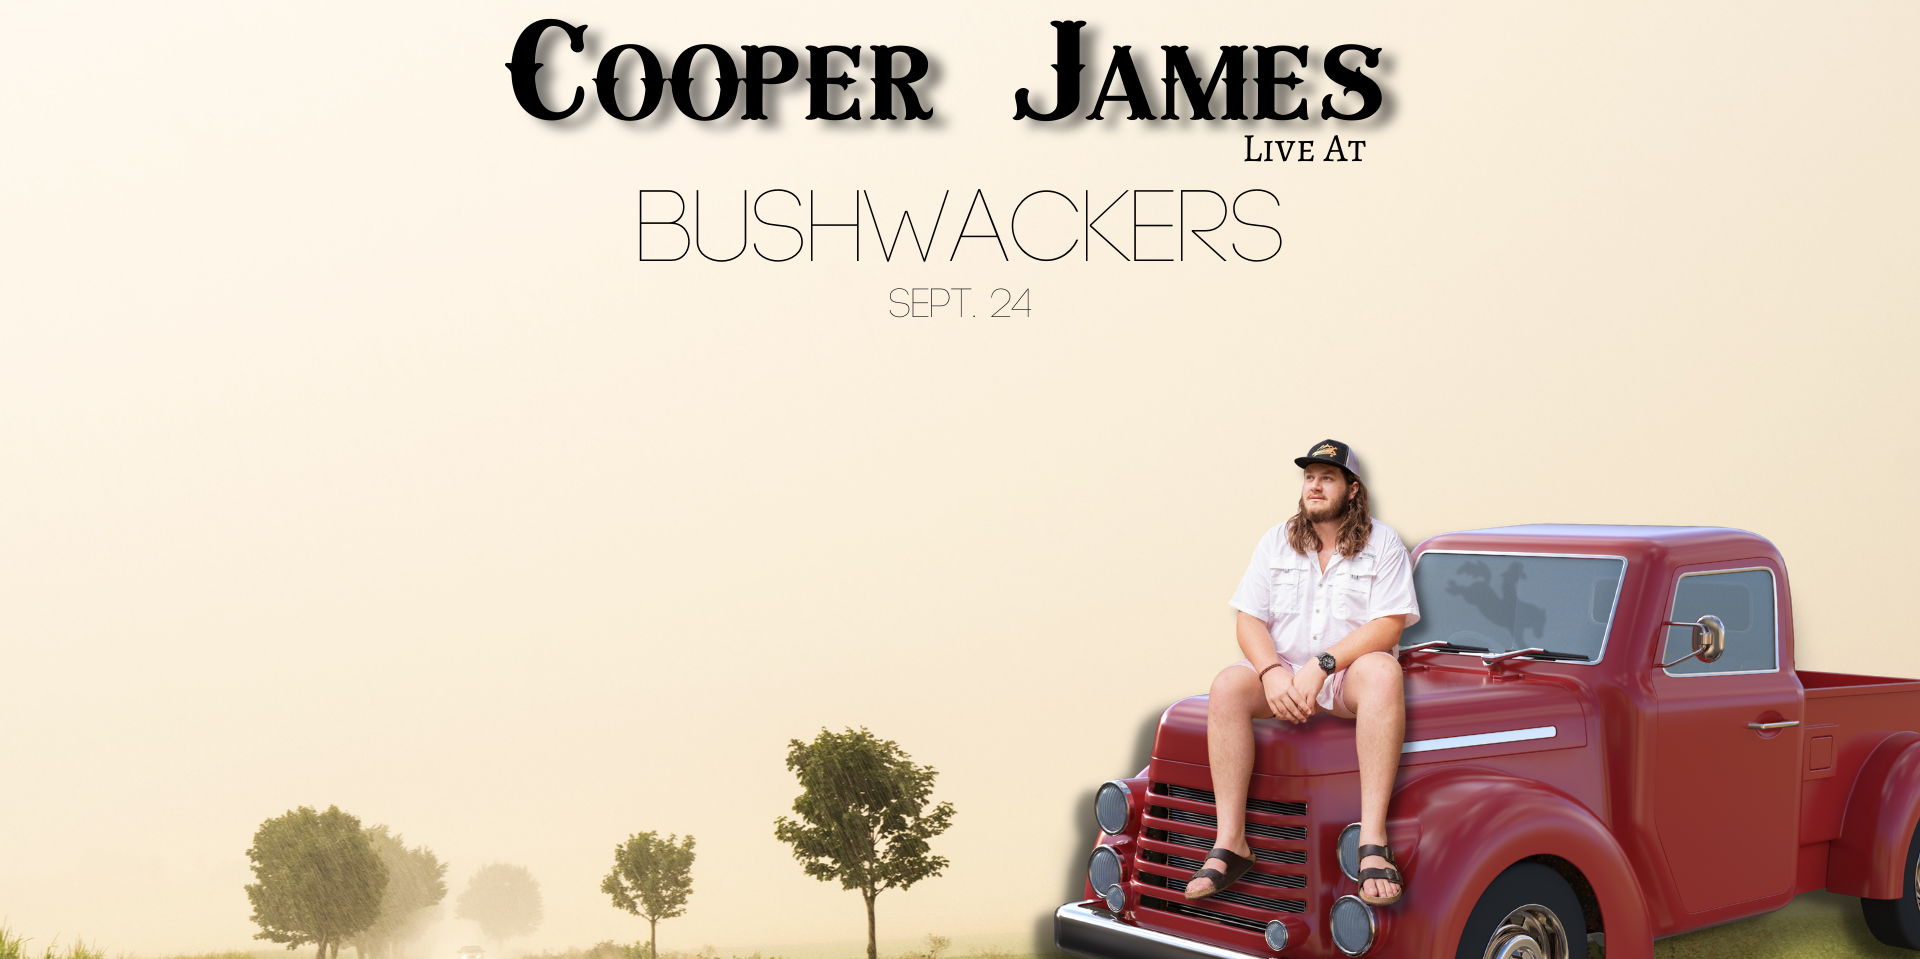 Bushwackers Live: Cooper James promotional image